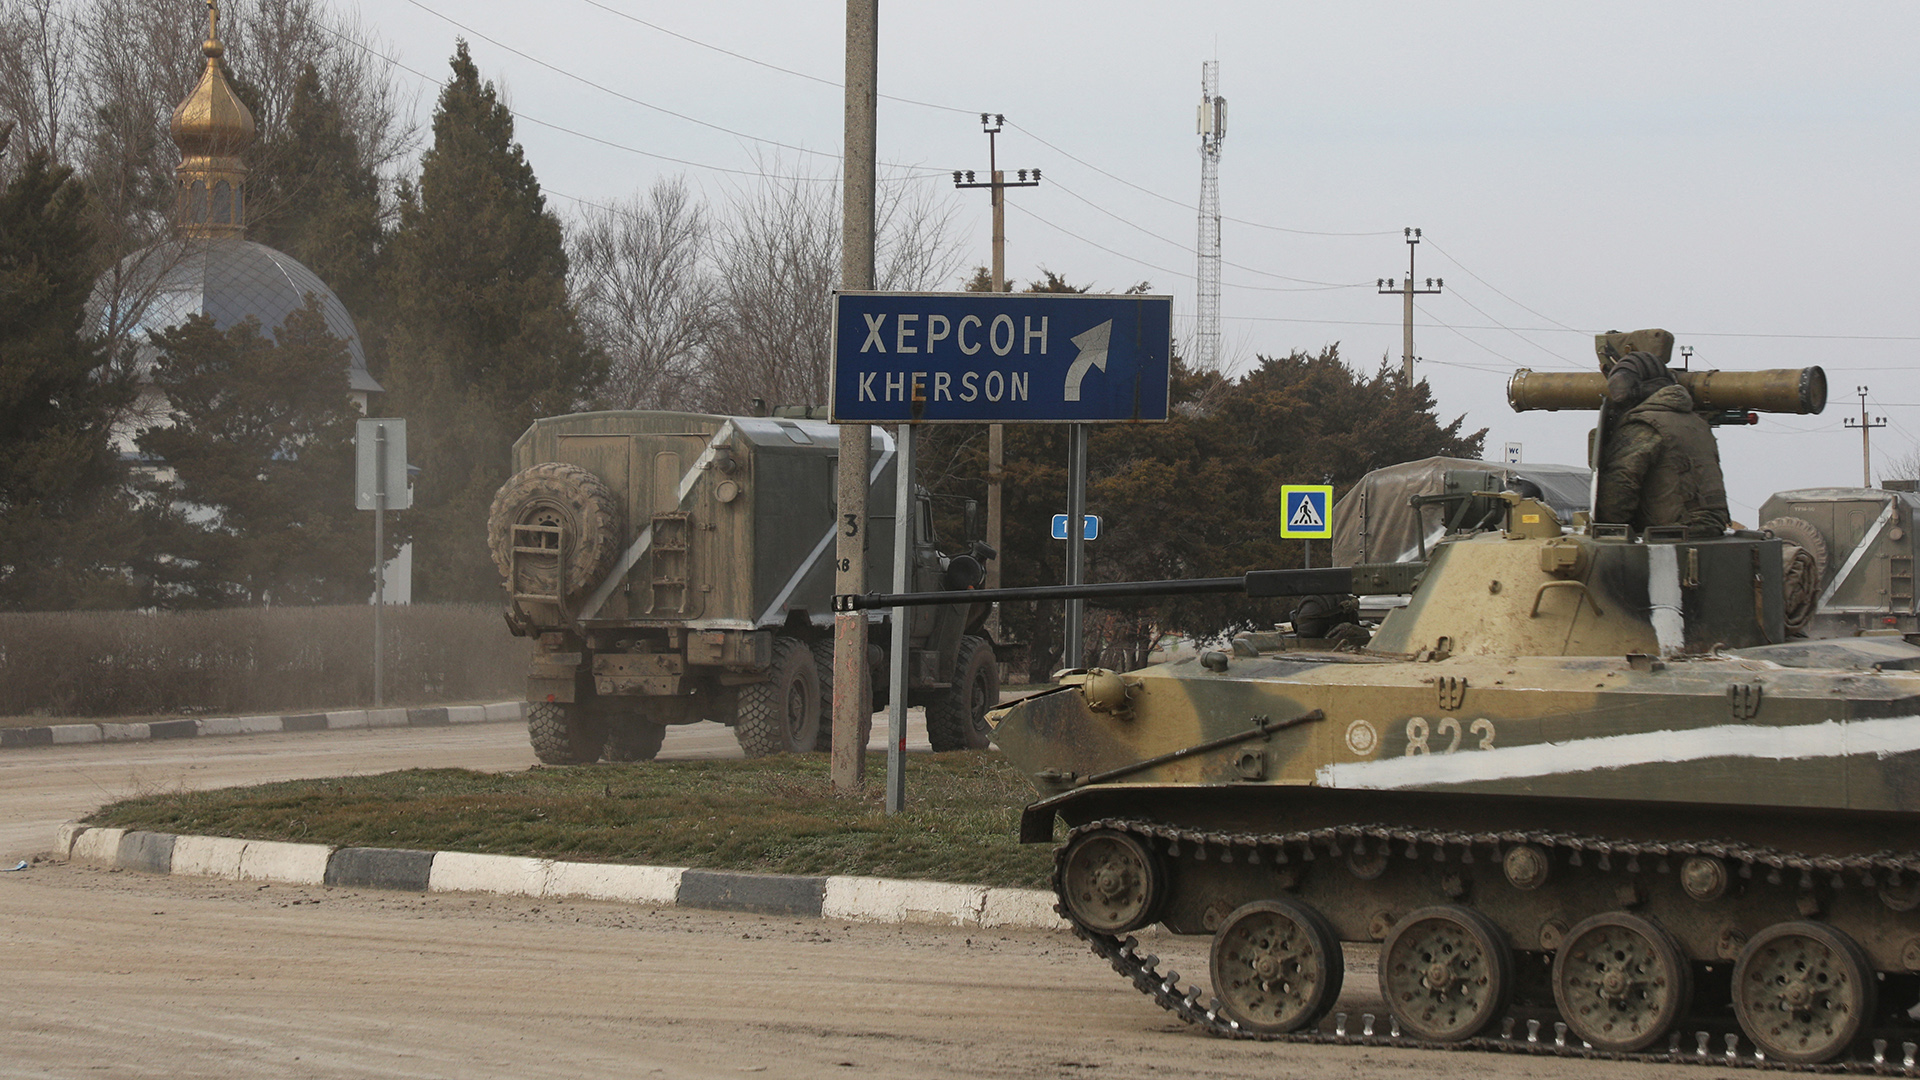 Militärfahrzeuge fahren auf einer Straße in Armyansk, Krim Halbinsel